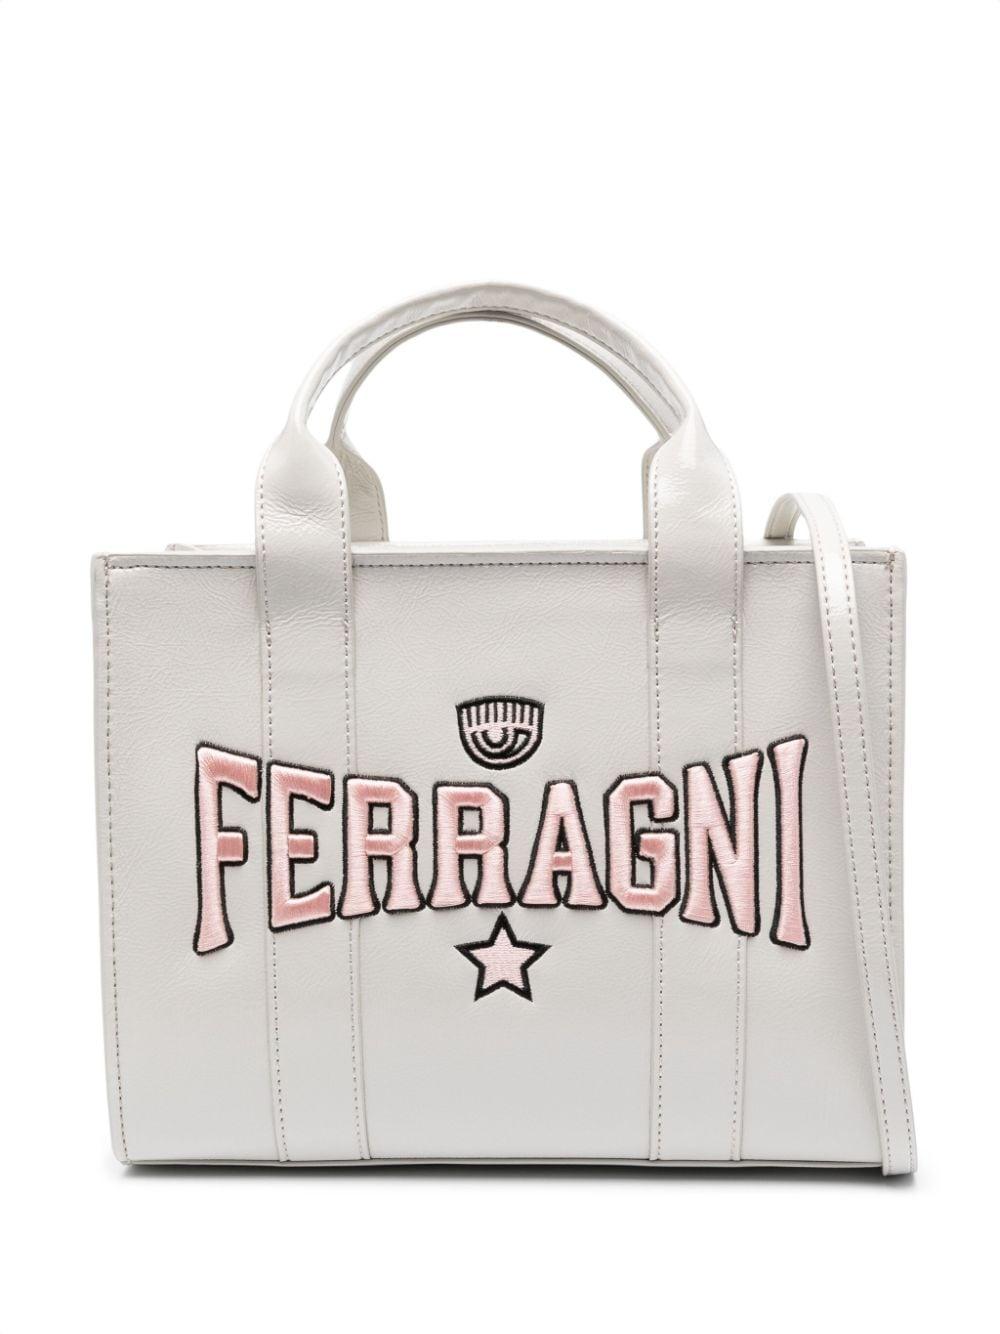 Tote bag with logo plaque - Chiara Ferragni 